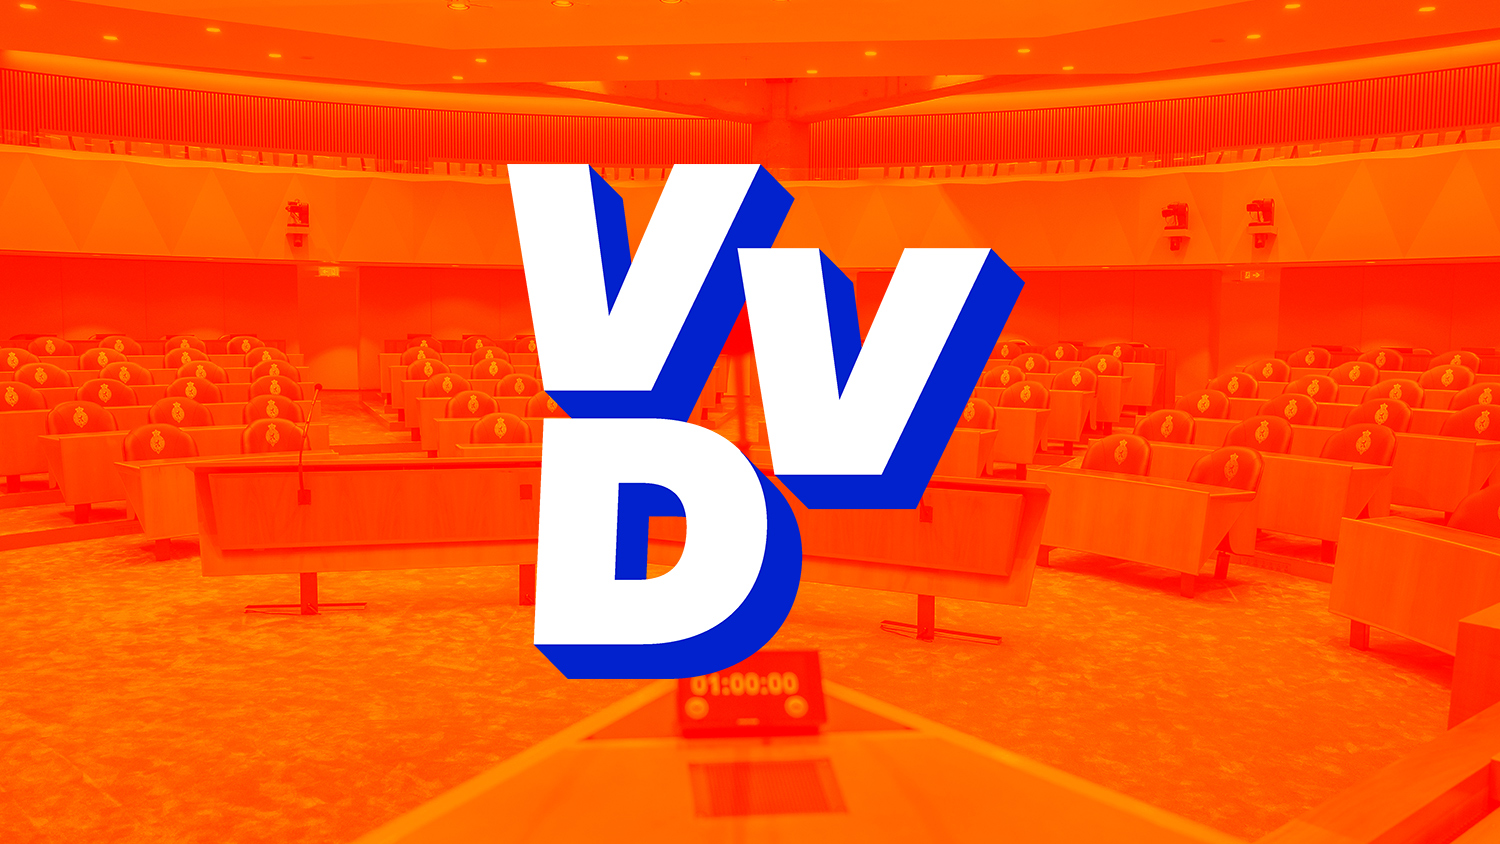 VVD logo Tweede Kamer